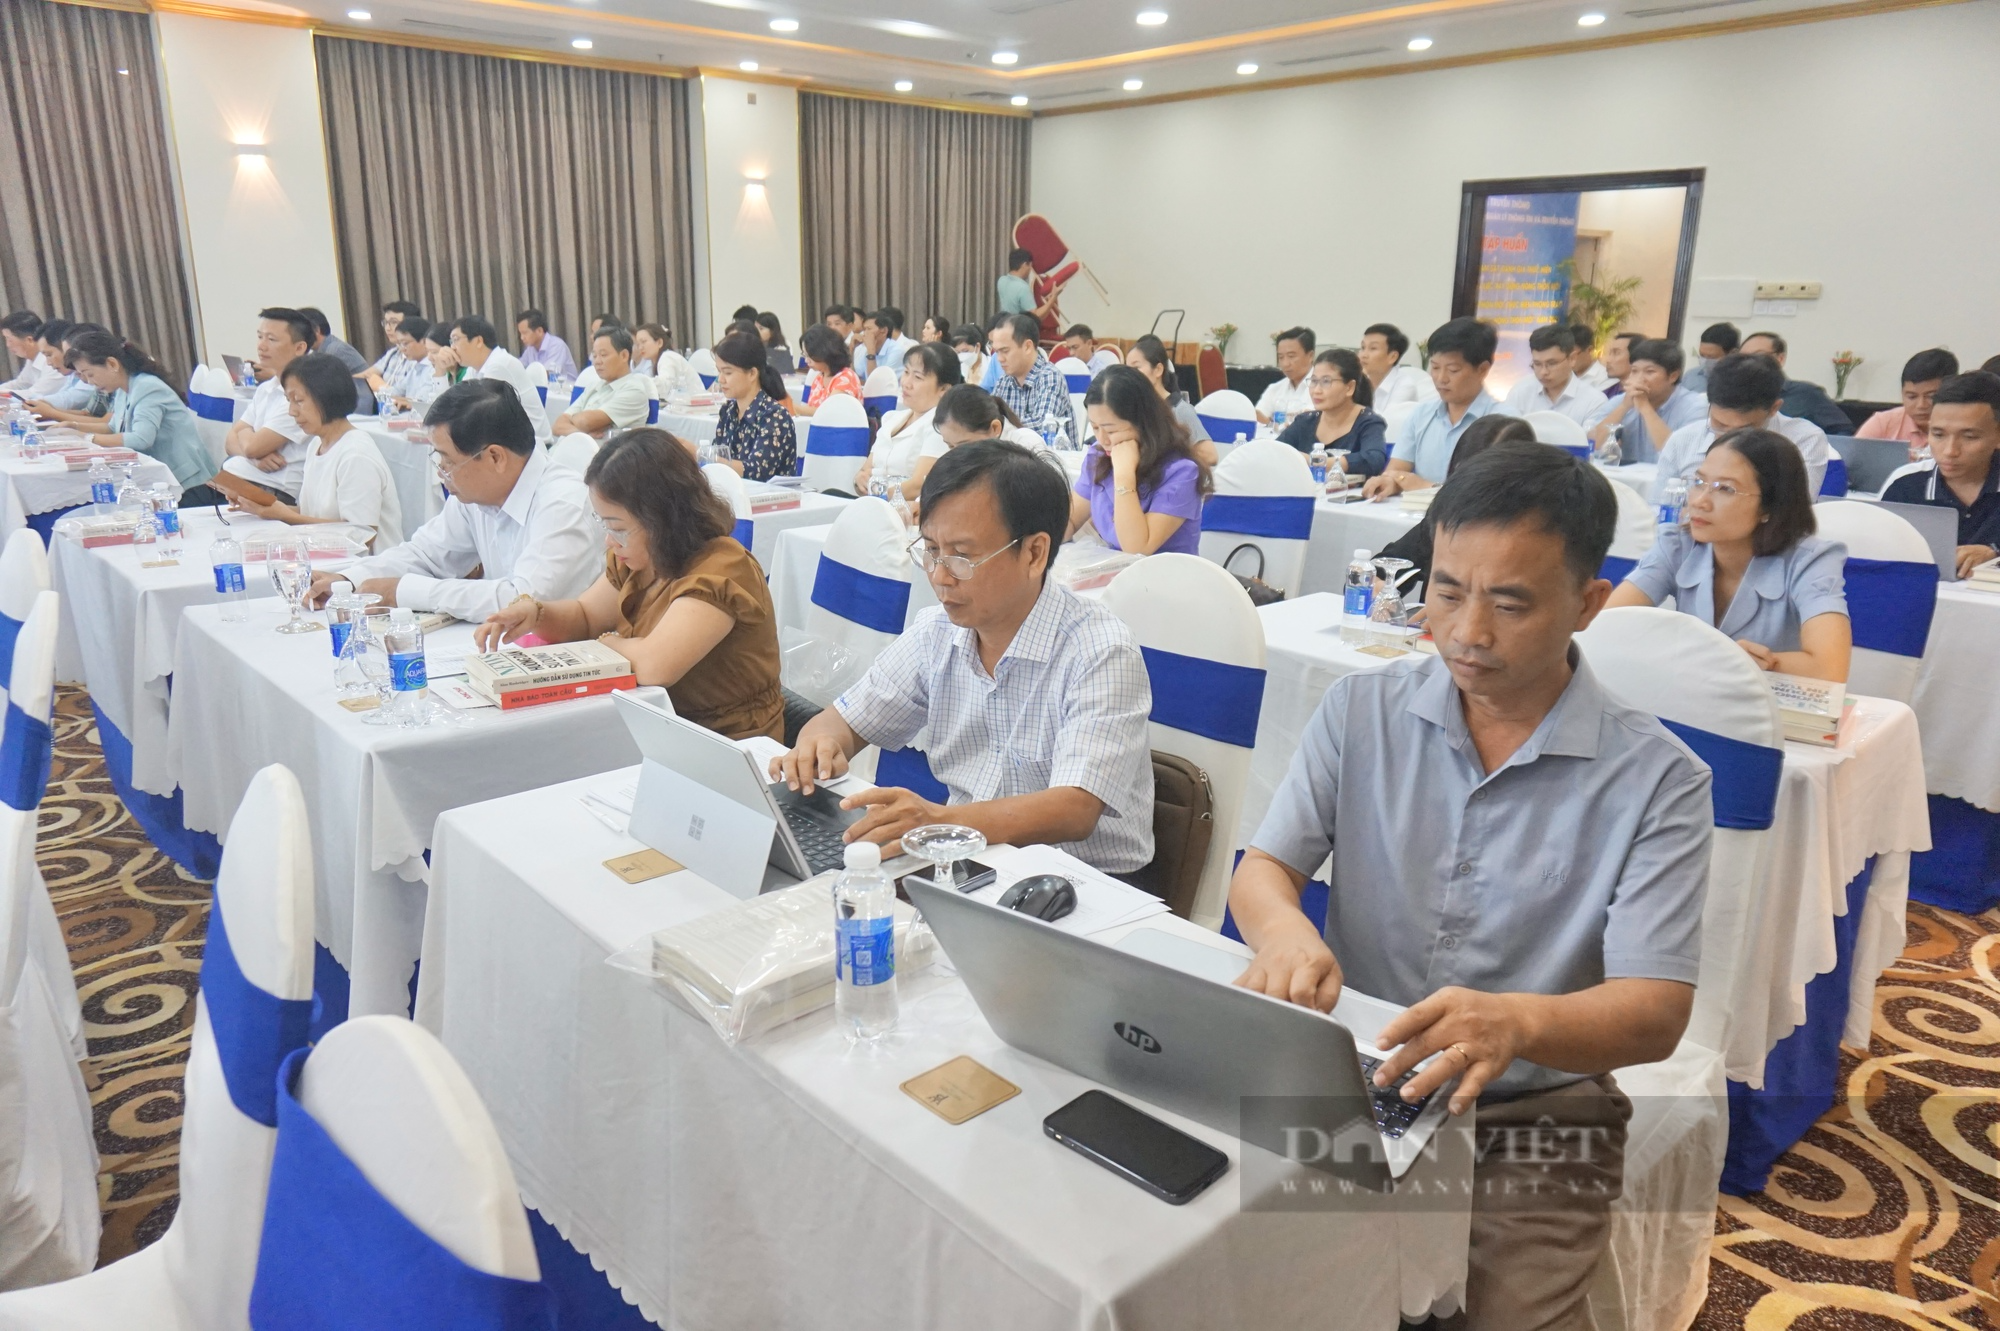 Đà Nẵng: Hơn 100 đại biểu tham dự tập huấn kỹ năng truyền thông về xây dựng nông thôn mới - Ảnh 4.